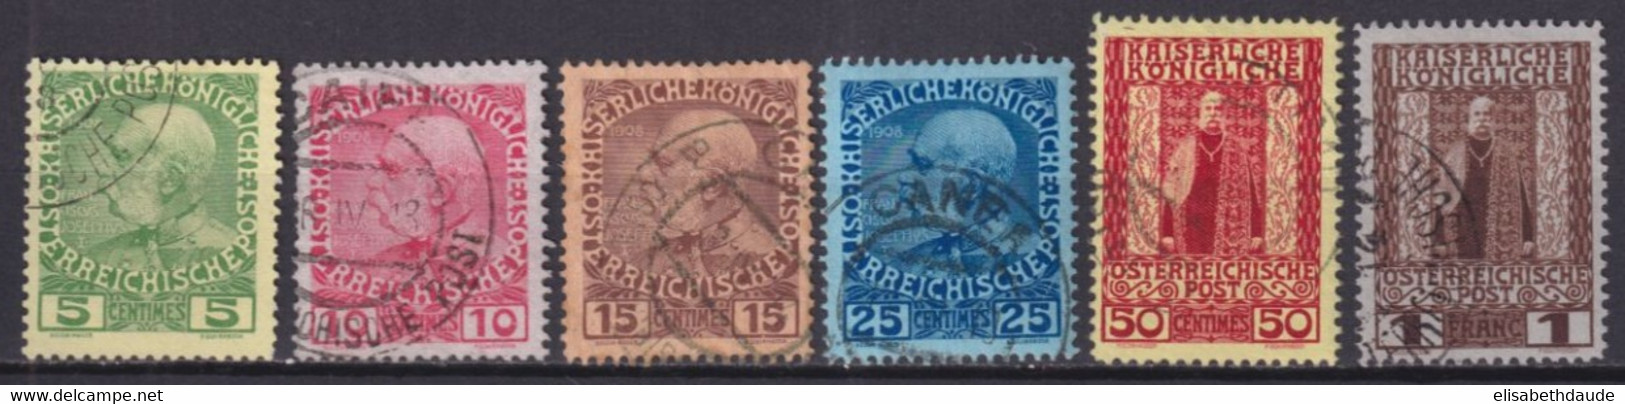 AUTRICHE : BUREAUX EN CRETE - 1908 - YVERT N°15/20 - COTE = 100 EUR. - Eastern Austria